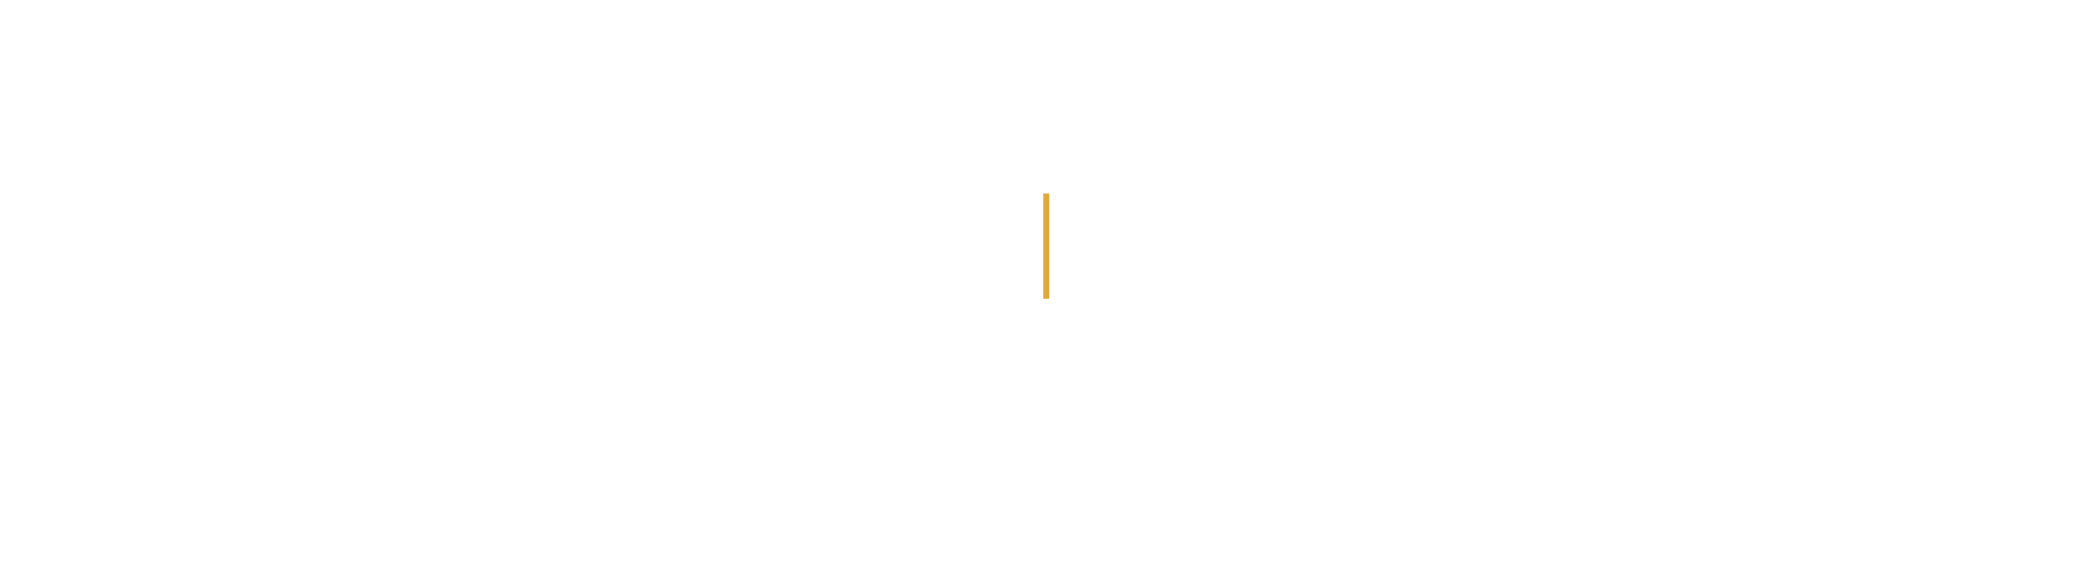 2022-23-Handel-Choir-Logo